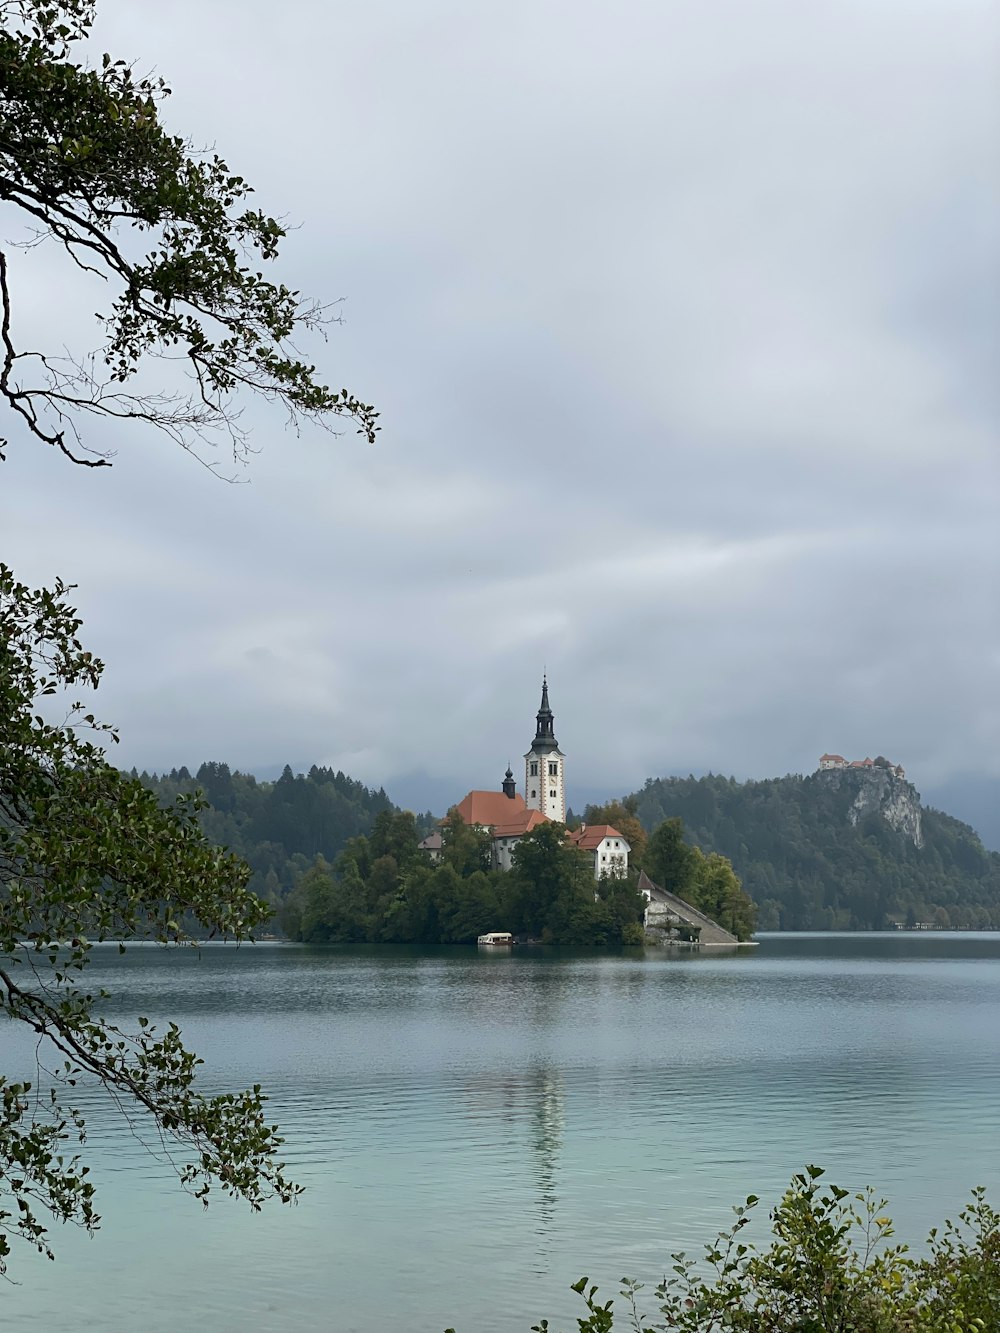 Una chiesa su una piccola isola nel mezzo di un lago